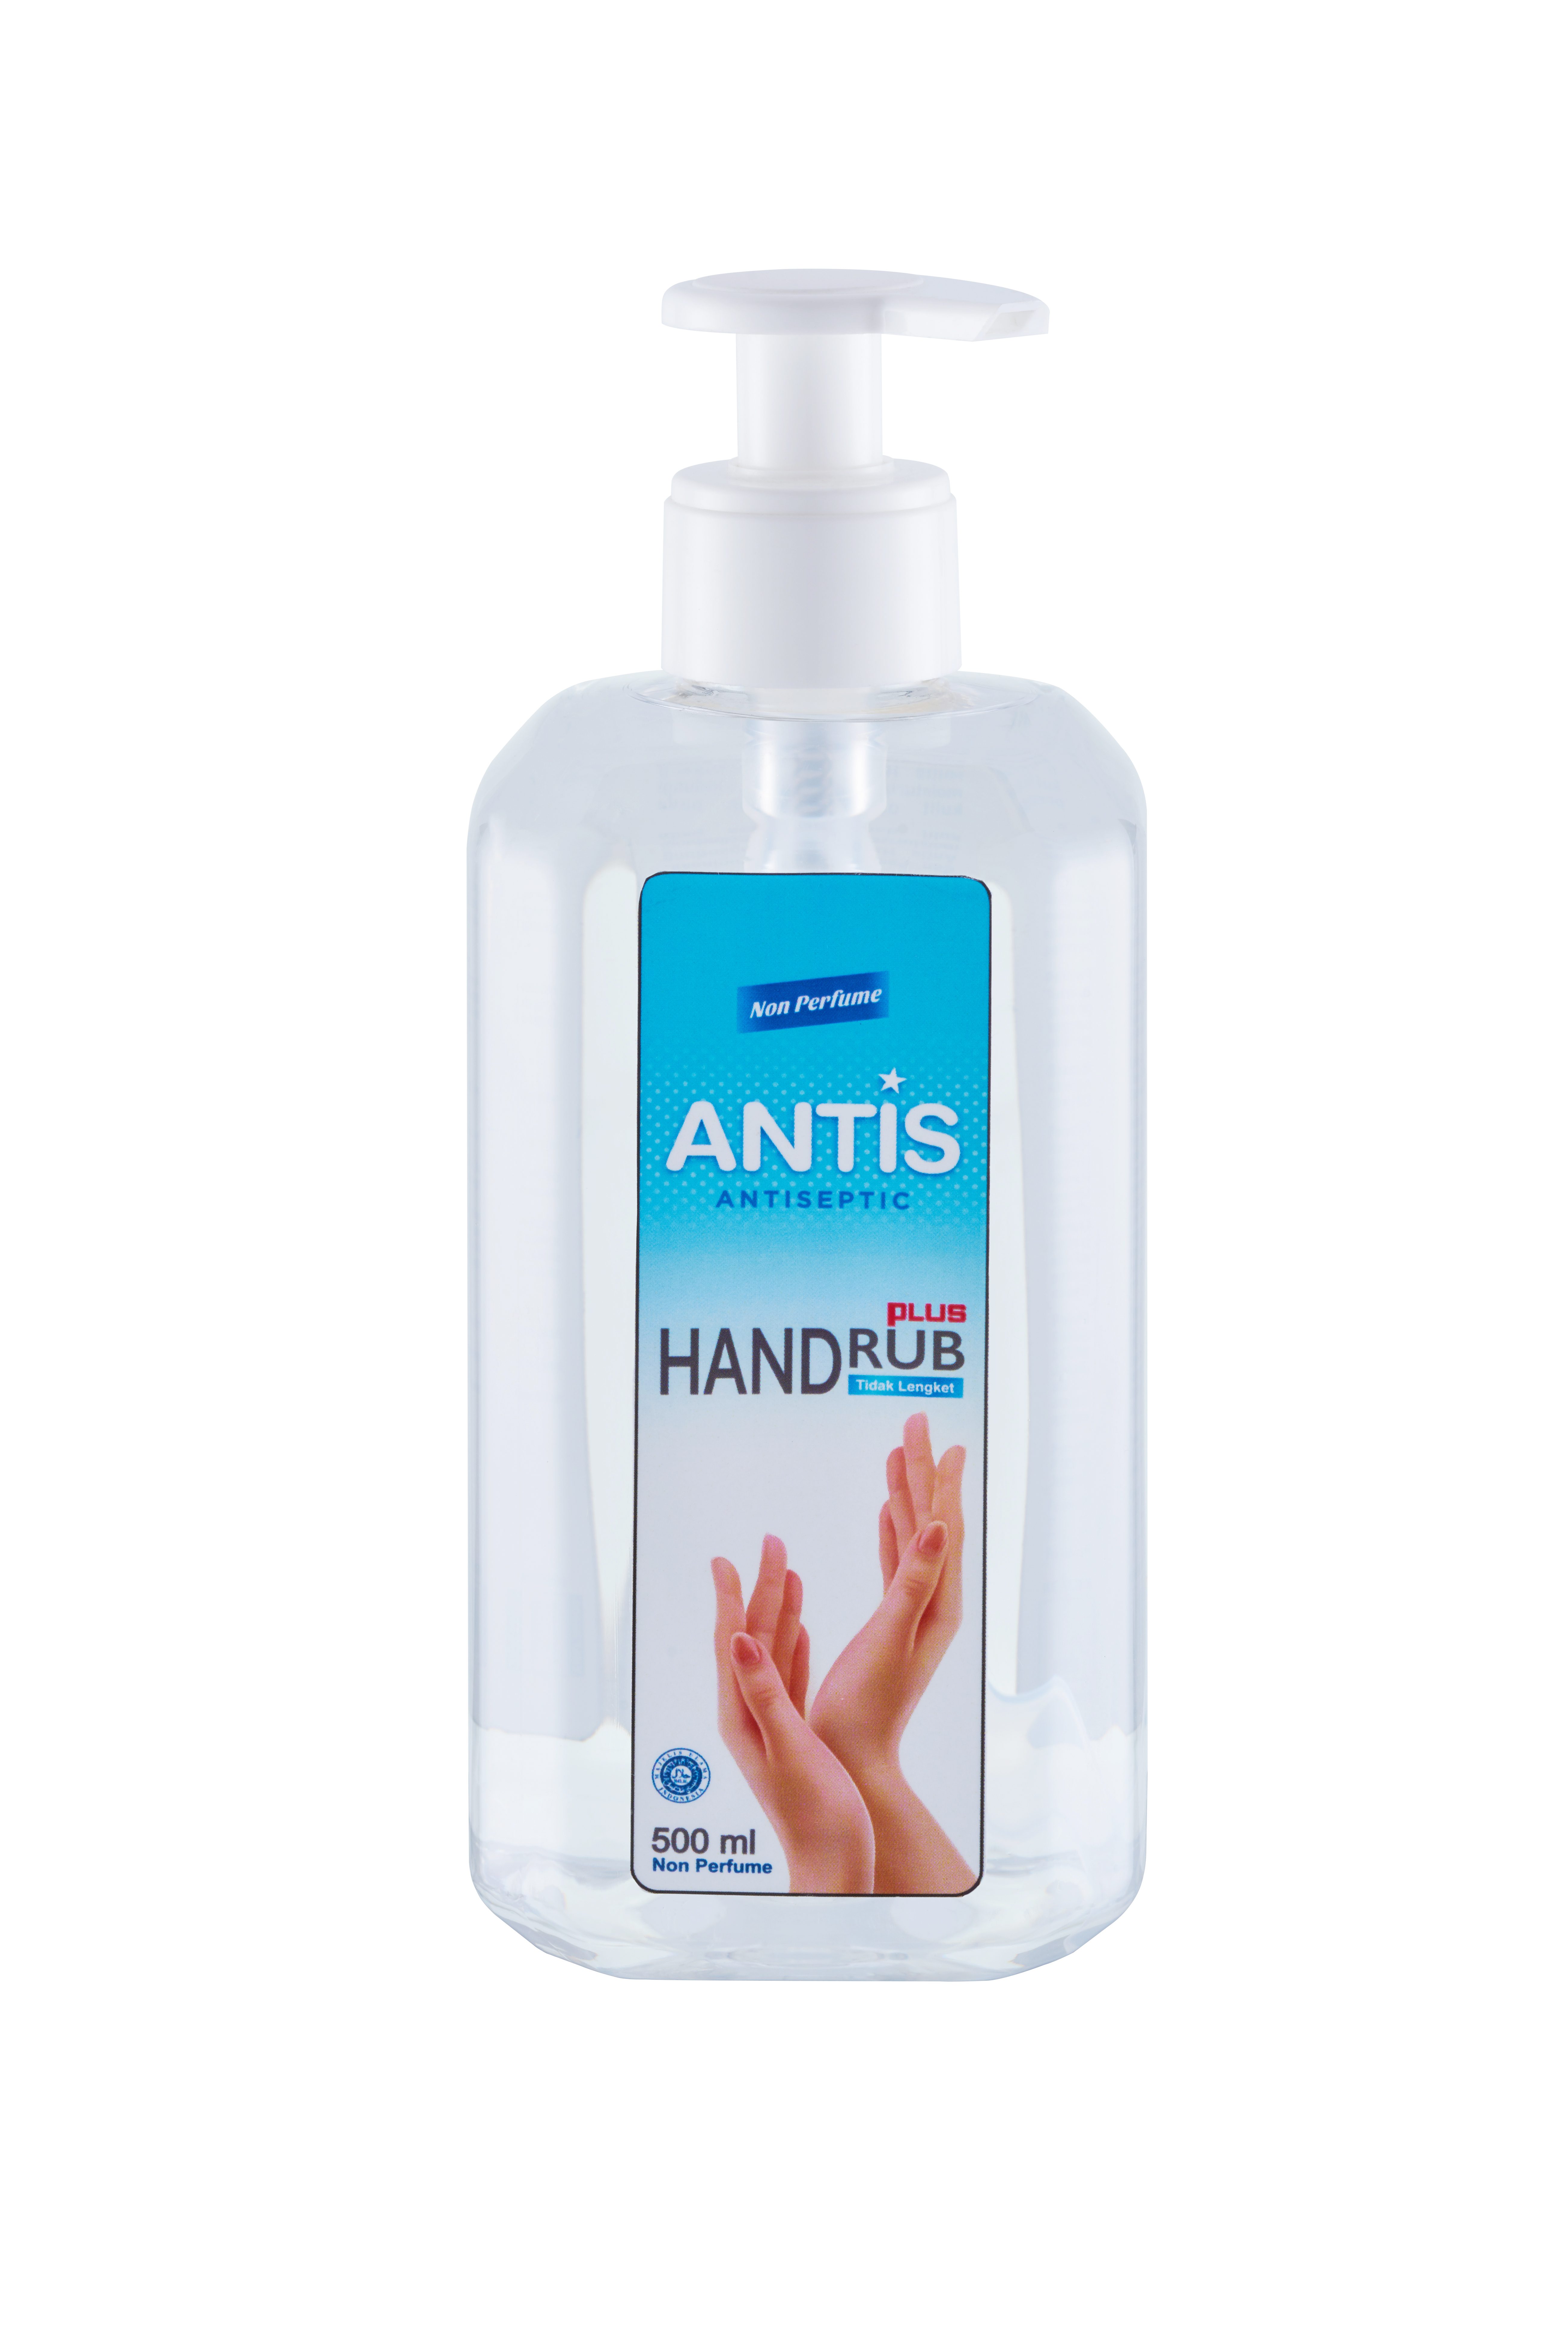 Antis Hand Rub